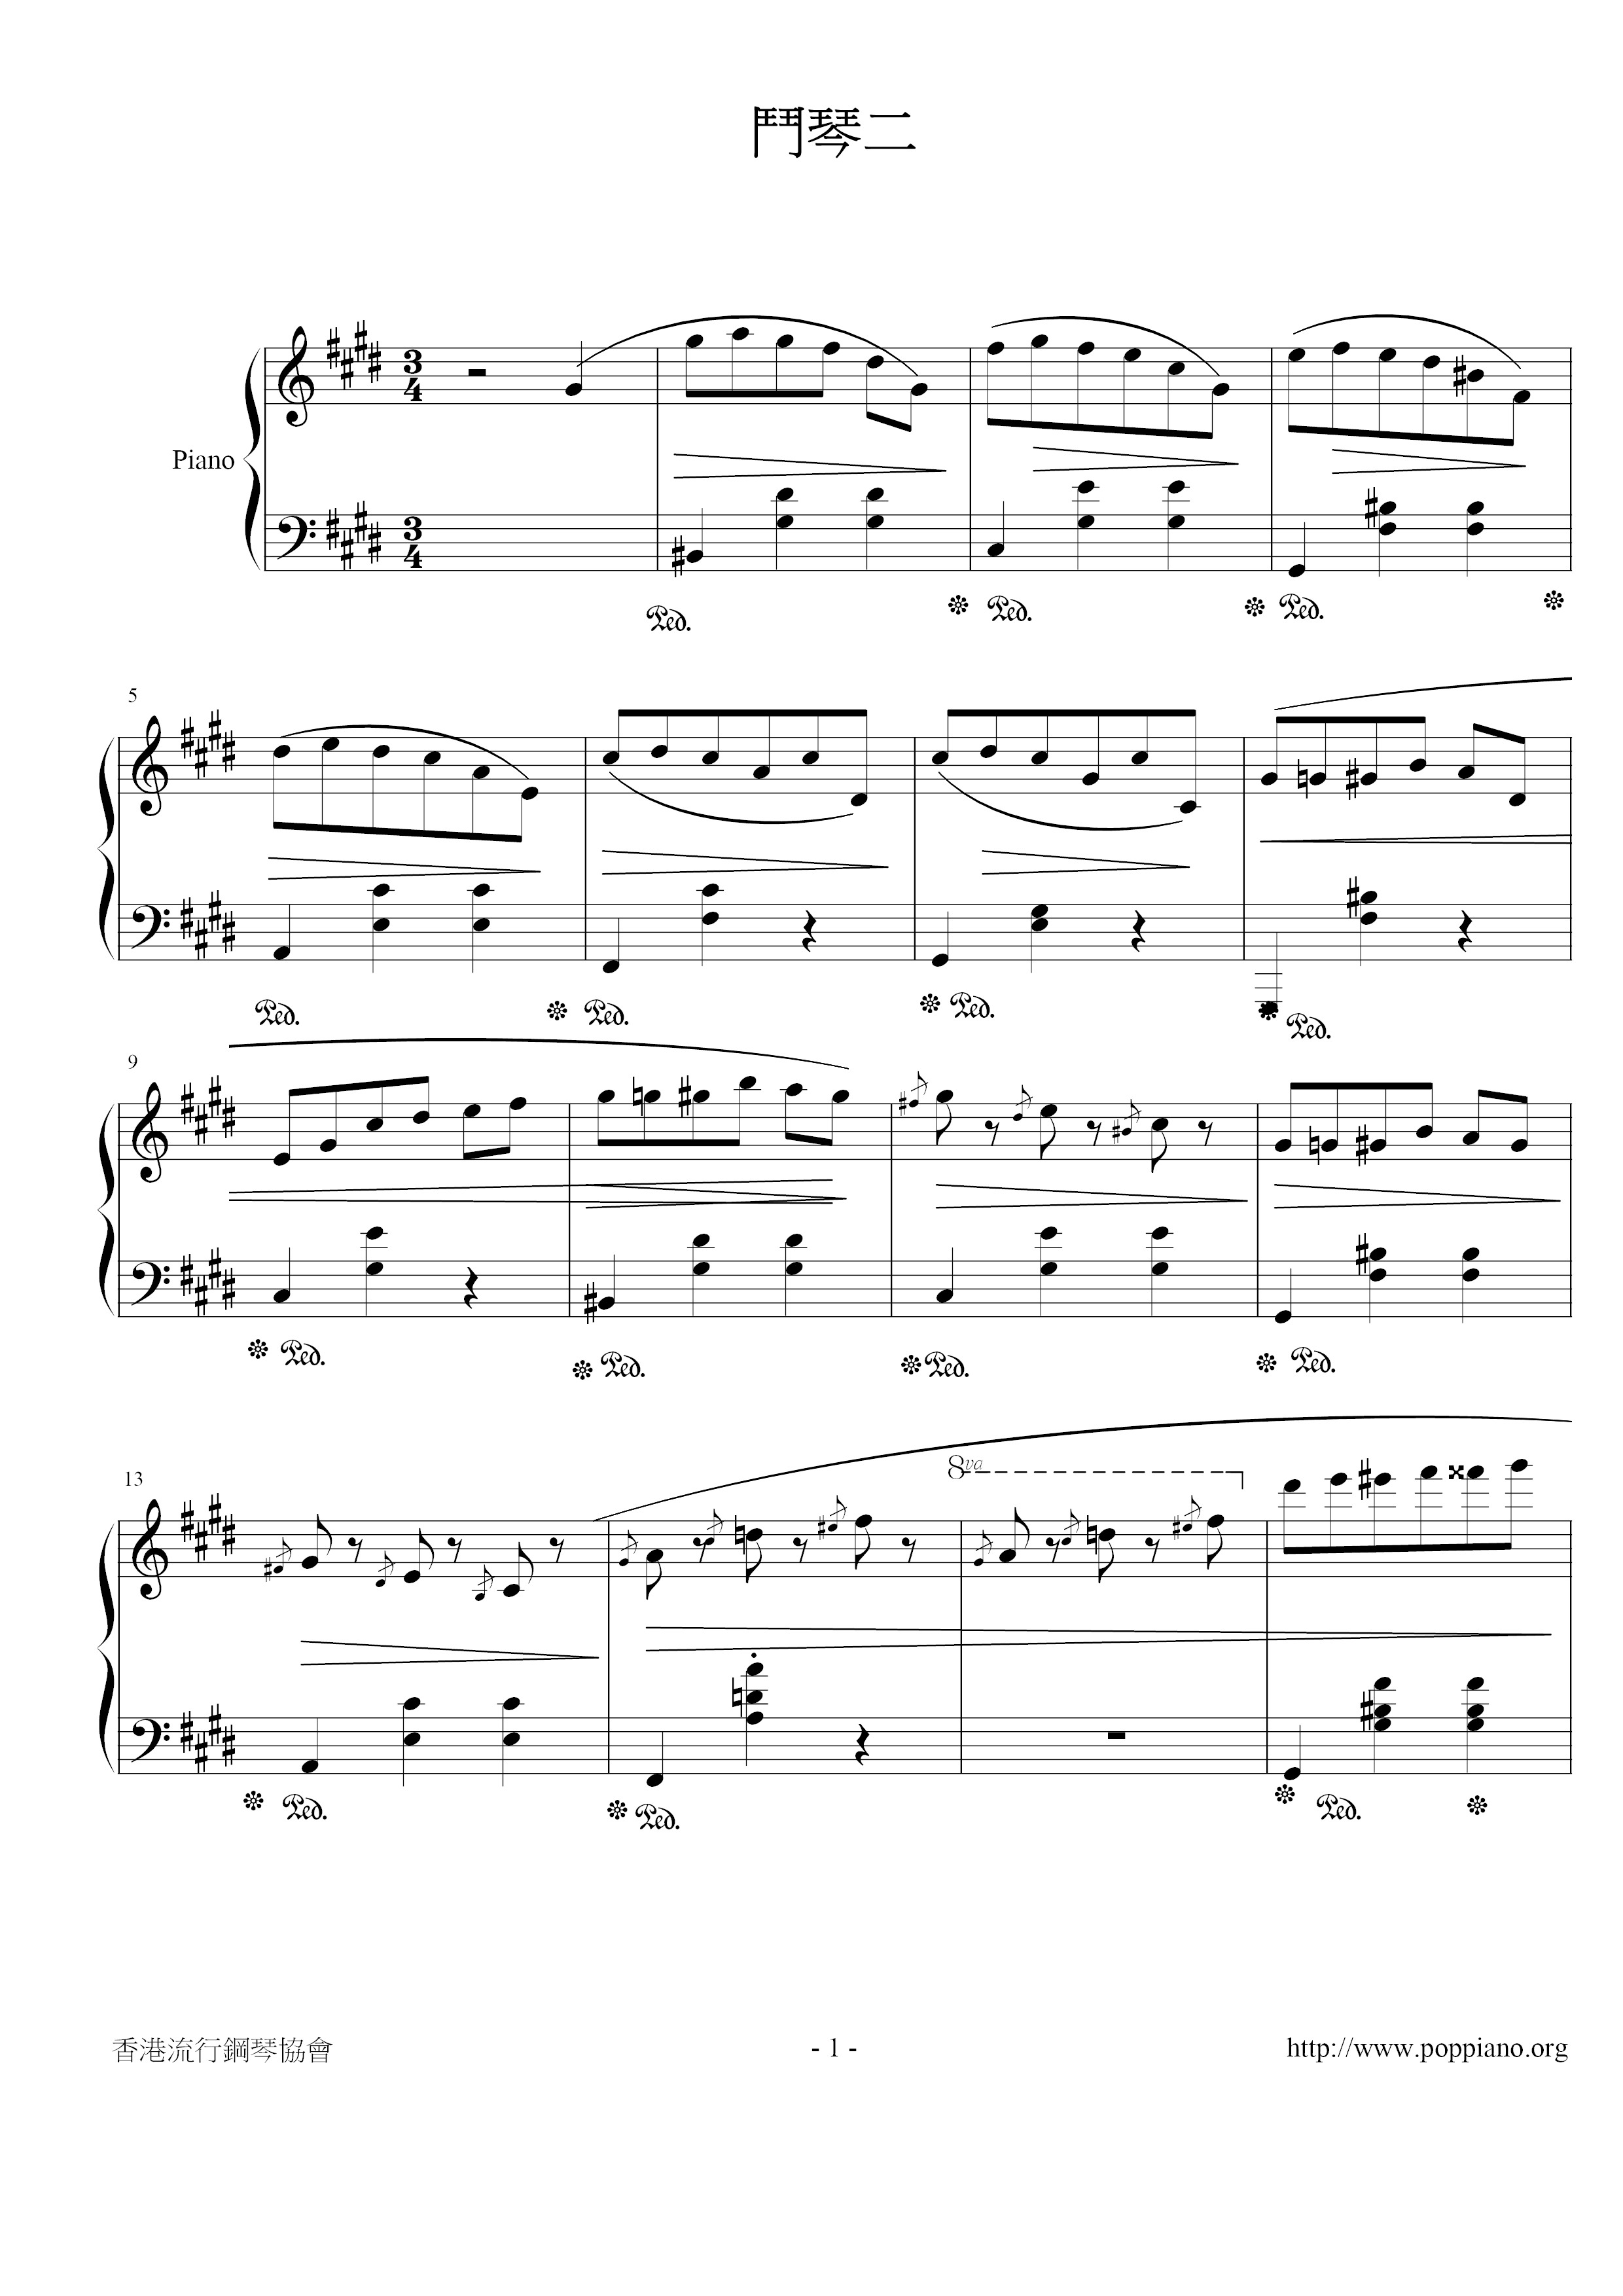 Op.64-2, Waltz No.7 Secret That Cannot Be Said 2 Score